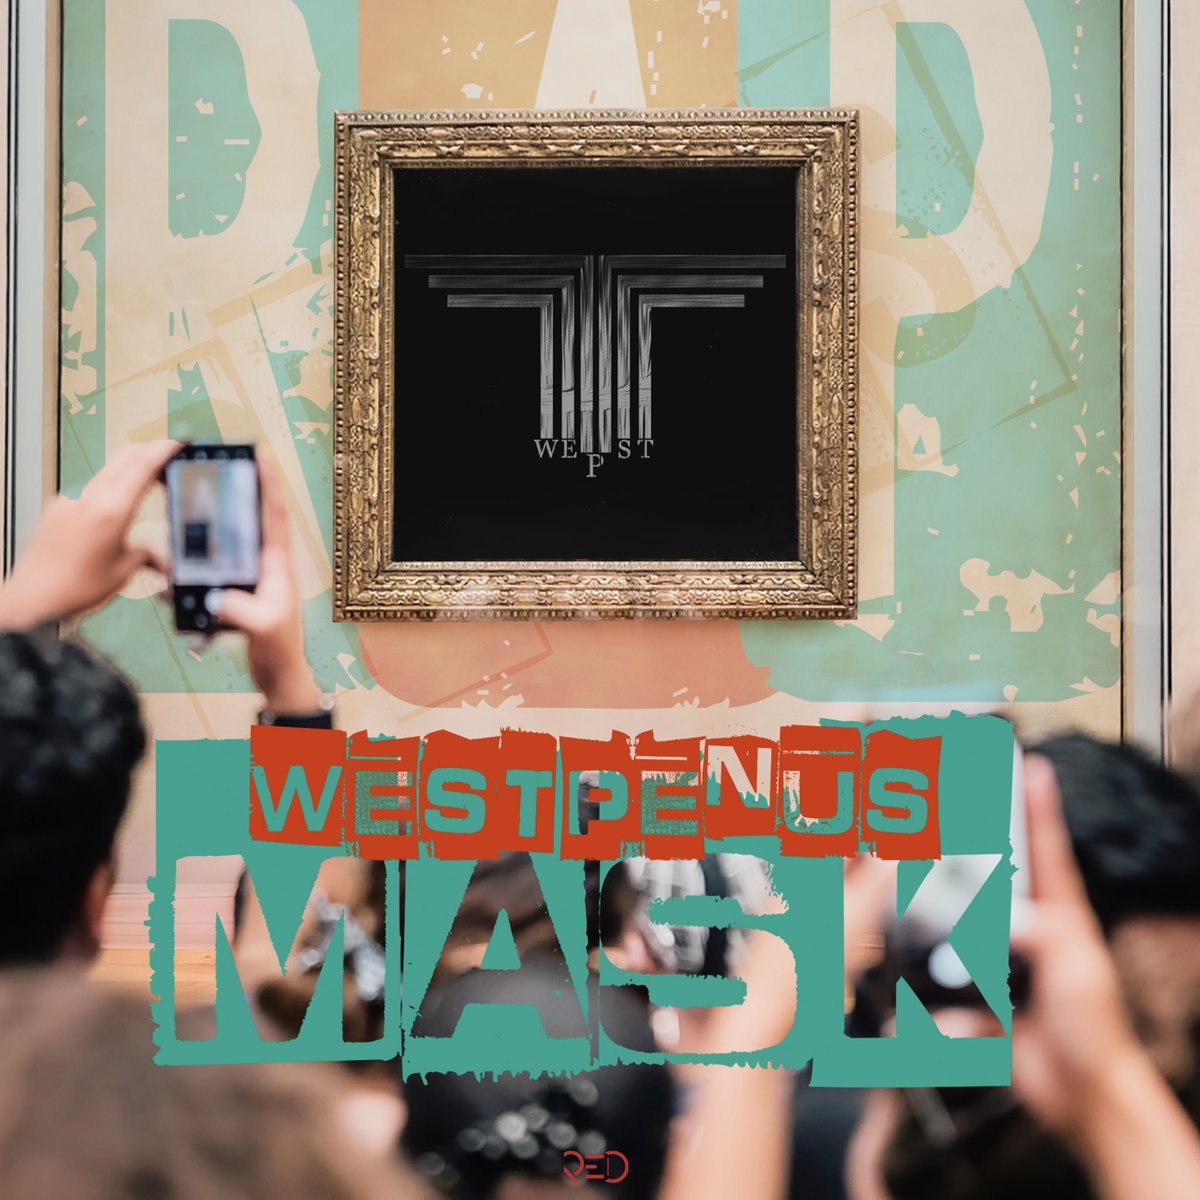 Westpenus “Mask” di demek nêz de | Yakında!